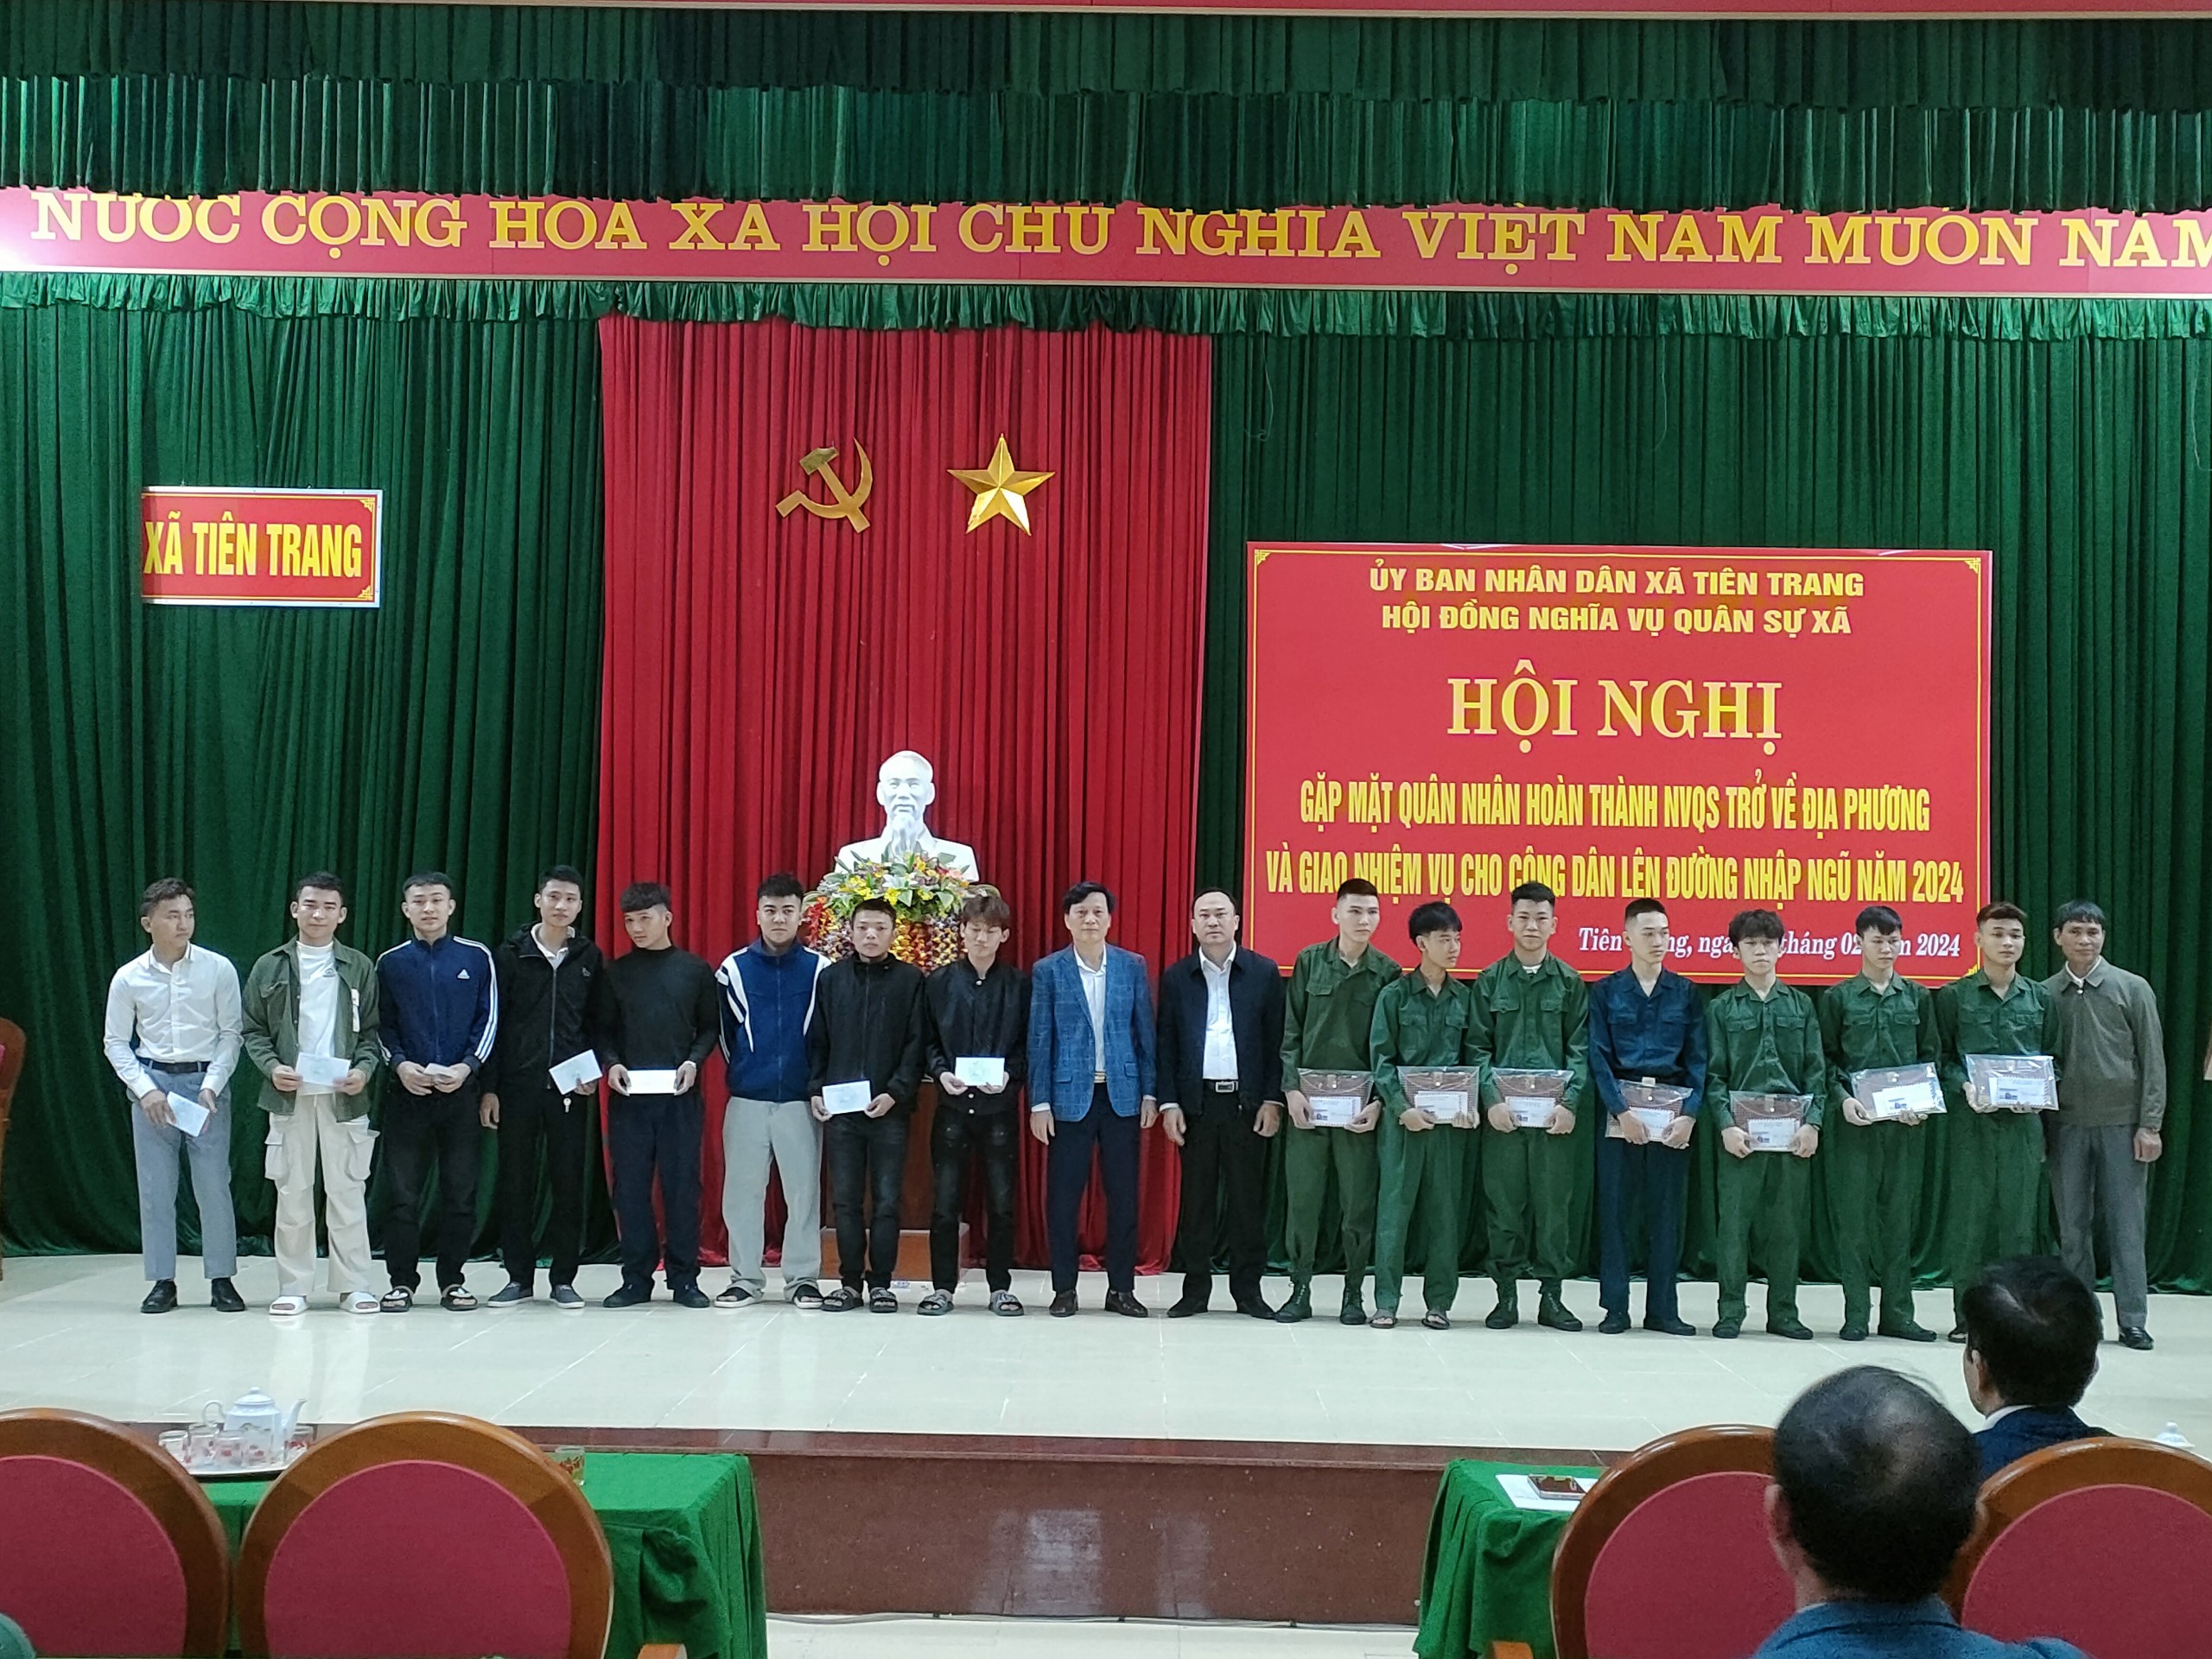 Xã Tiên Trang tổ chức hội nghị gặp mặt quân nhân hoàn thành nghĩa vụ trở về địa phương và giao nhiệm vụ cho thanh niên lên đường nhập ngũ năm 2024